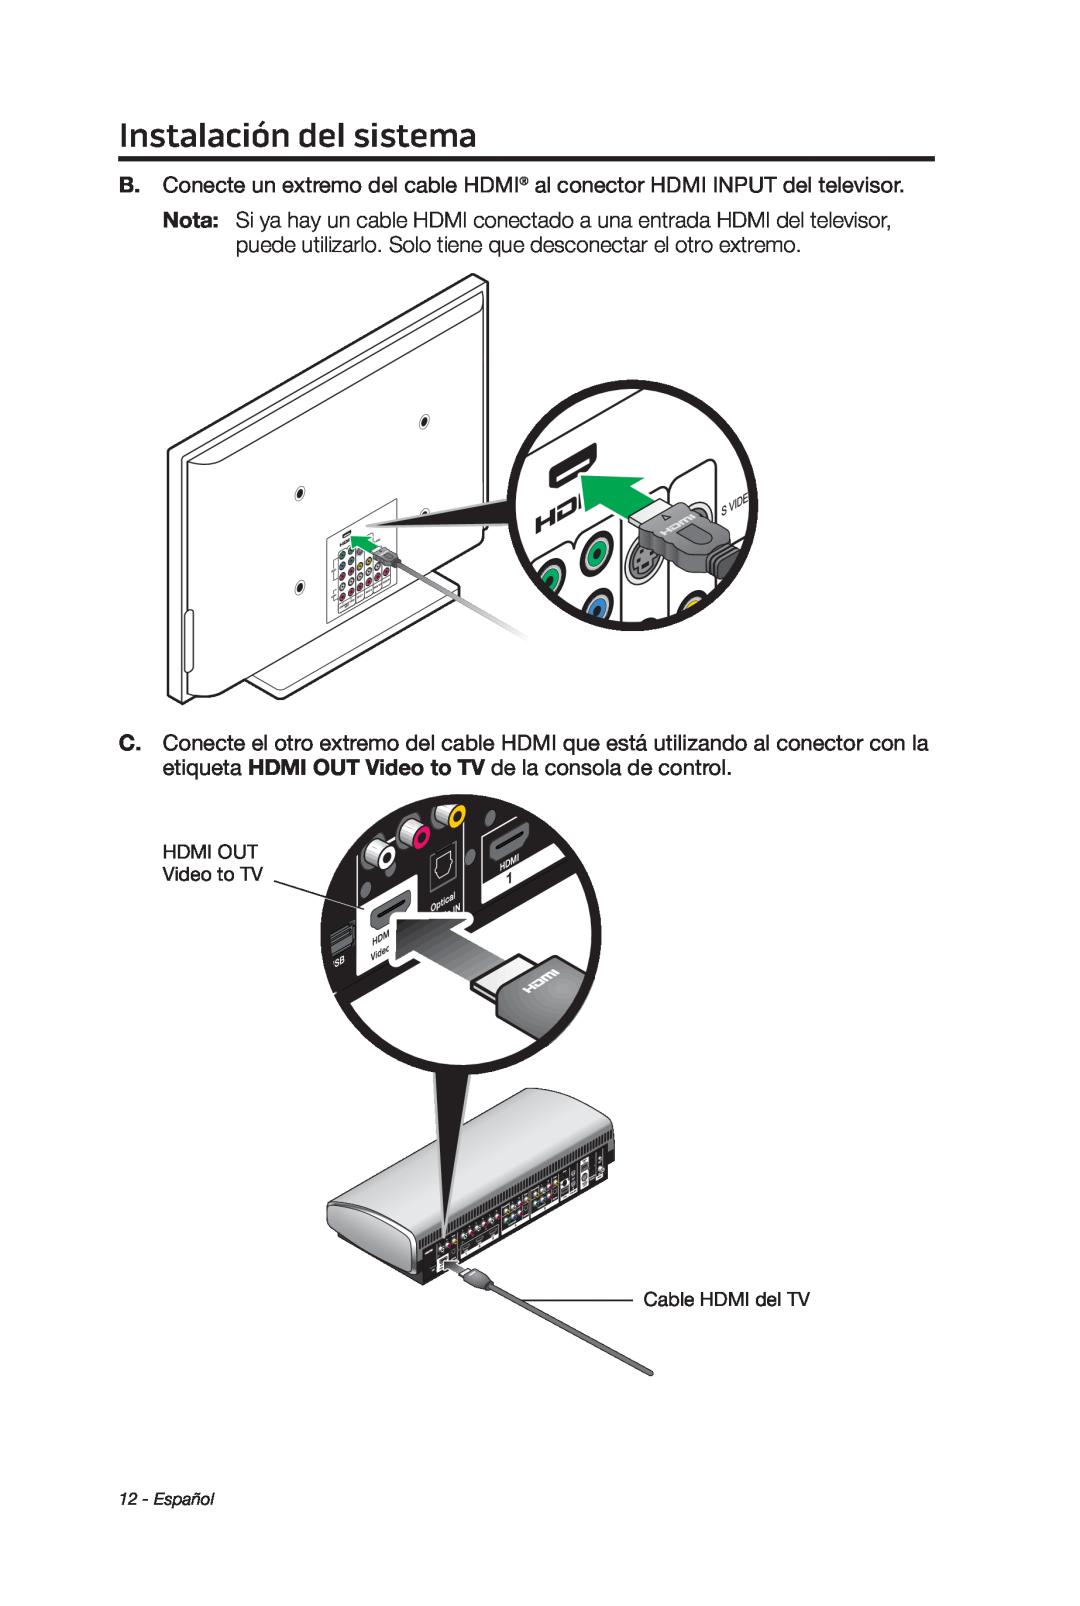 Bose 135 setup guide Instalación del sistema, HDMI OUT Video to TV Cable HDMI del TV, Español 